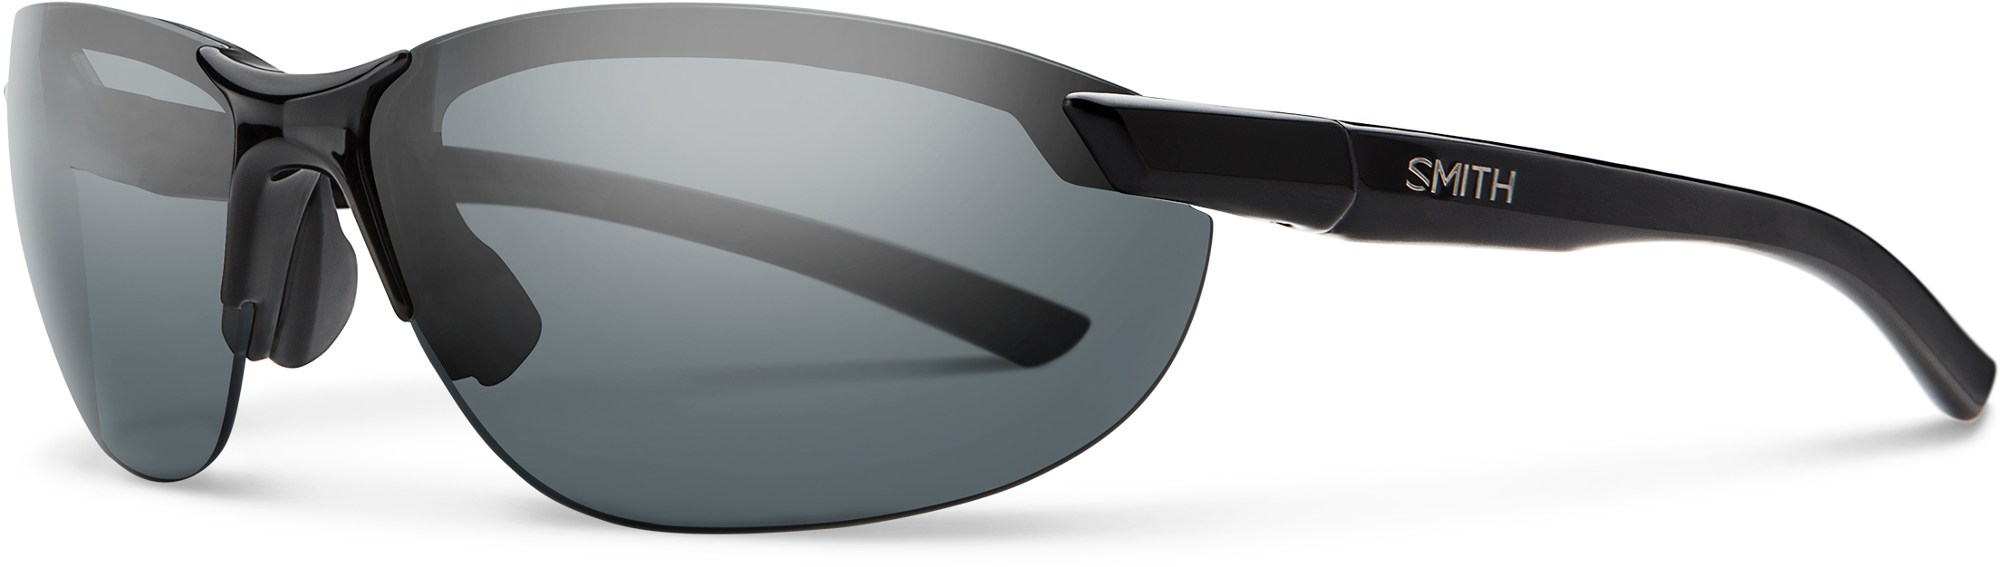 Поляризованные солнцезащитные очки Parallel 2 Smith, черный